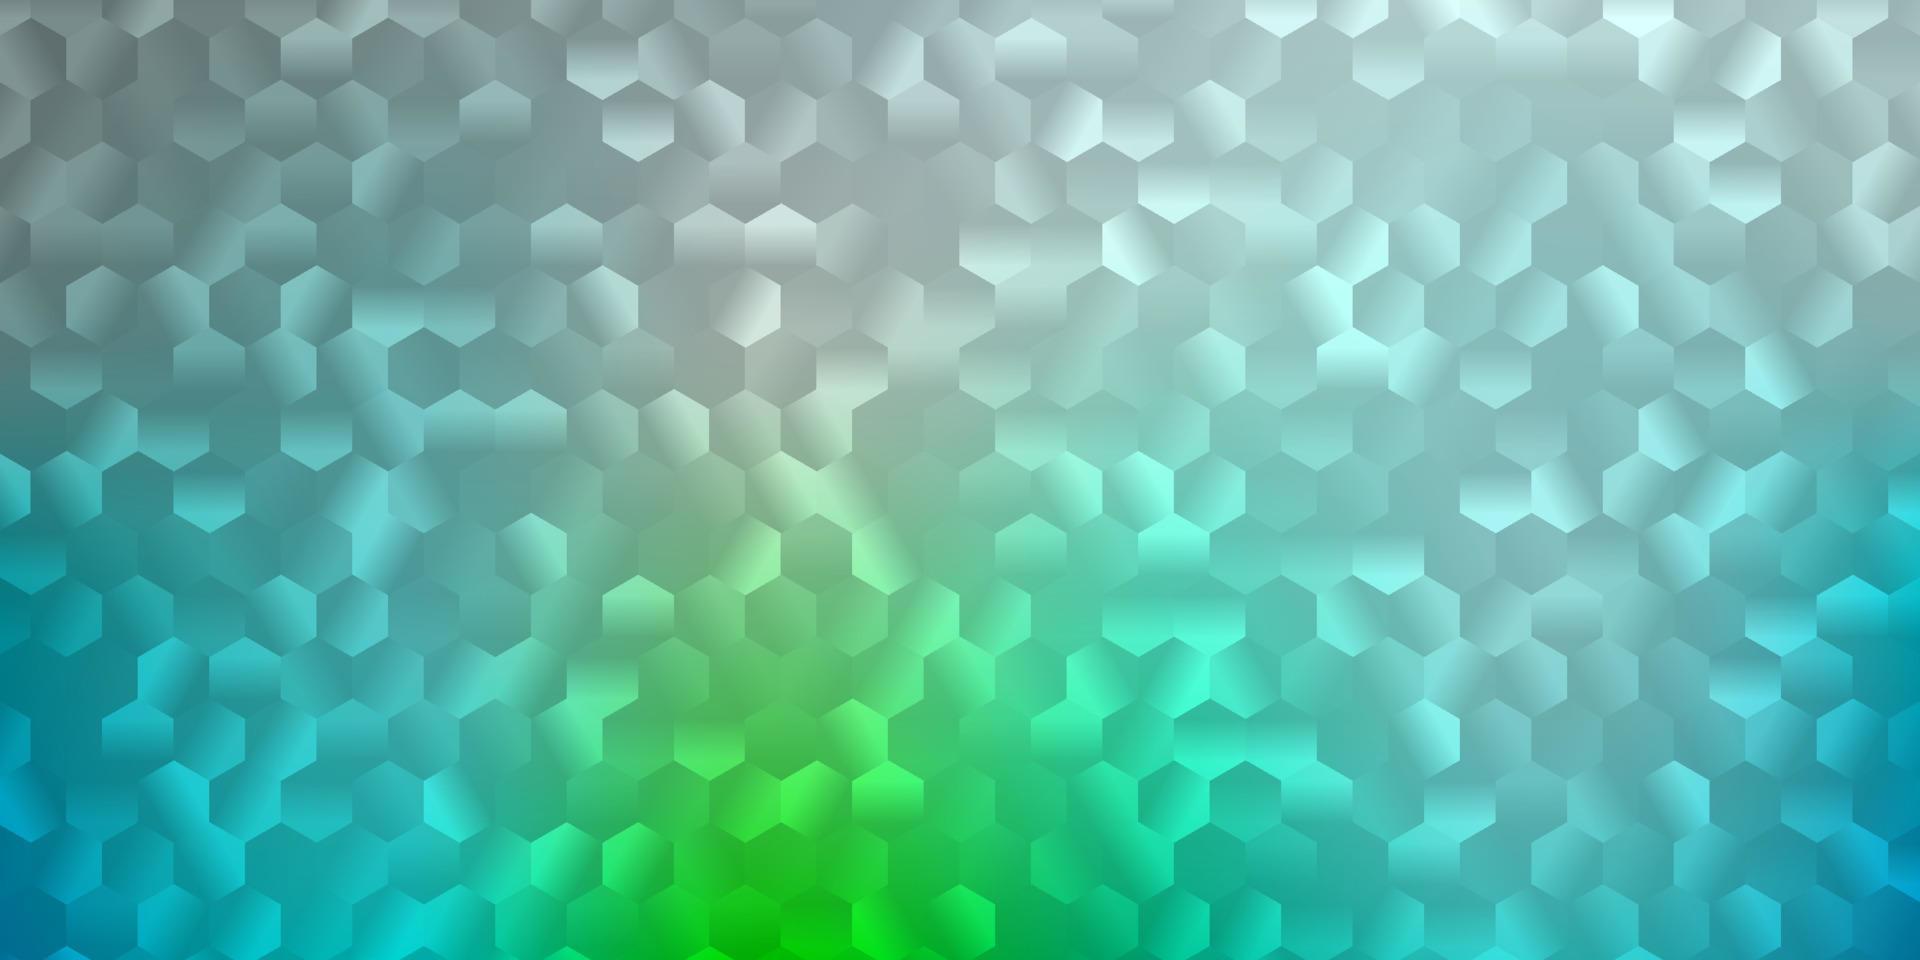 Fondo de vector azul claro, verde con formas hexagonales.